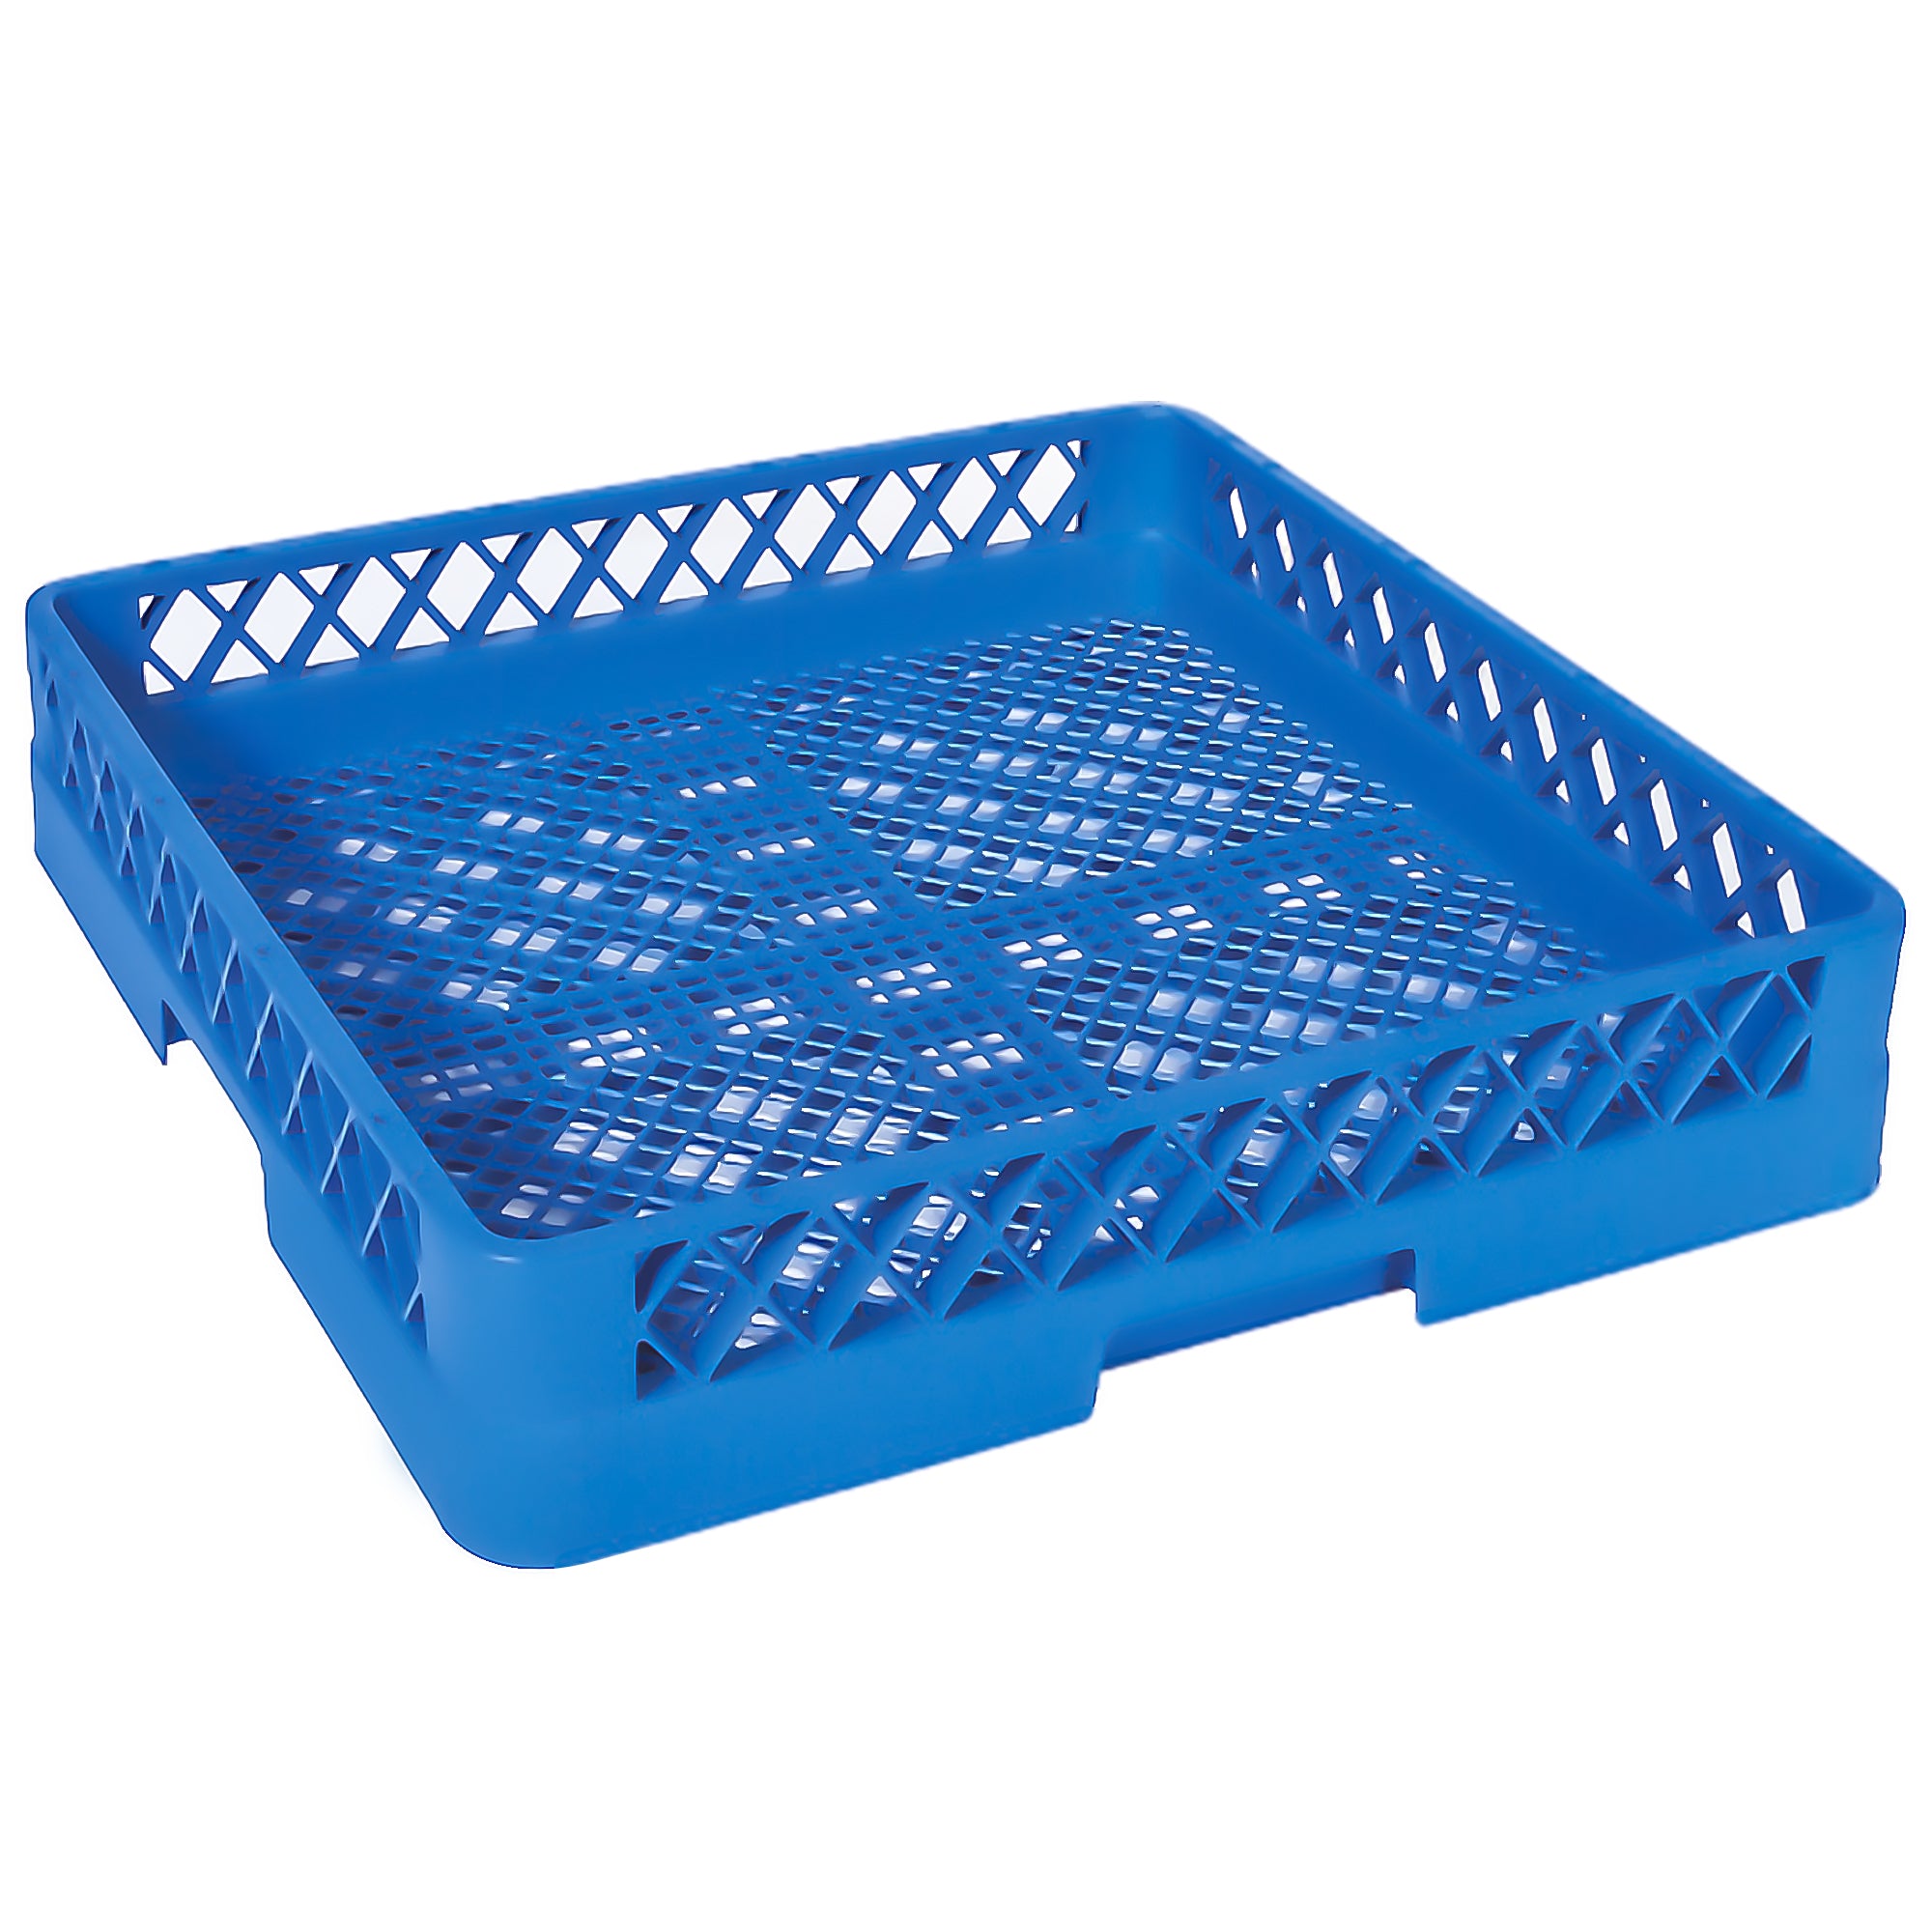 (6 броя) Универсална кошница 50 x 50 cm - синя